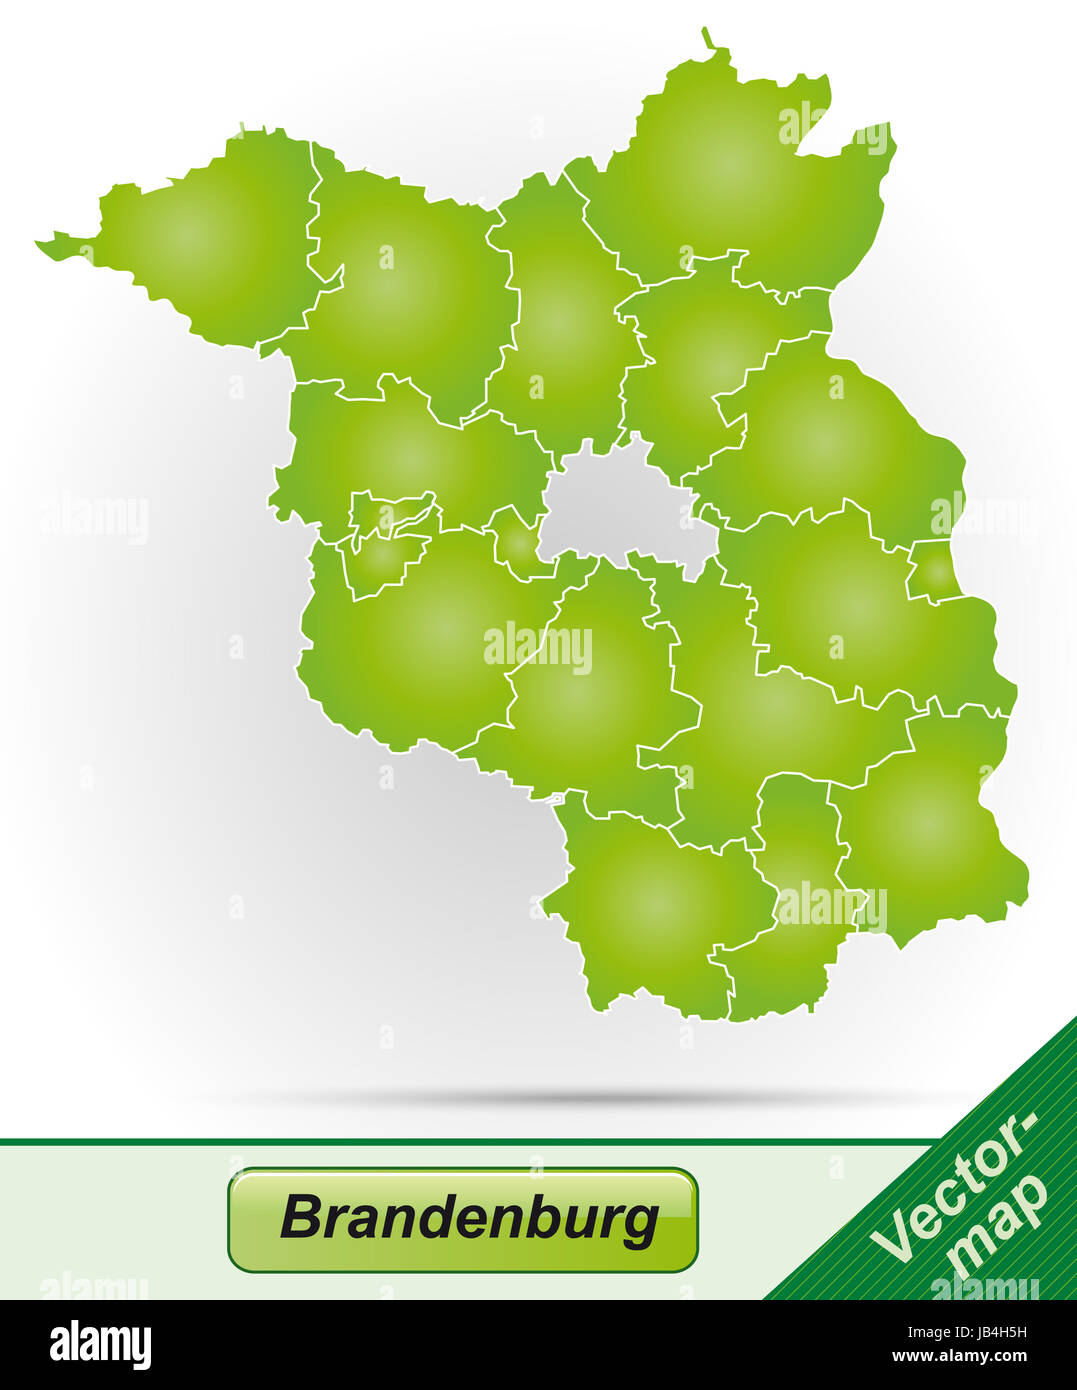 Brandeburgo in Deutschland als Grenzkarte mit Grenzen in Grün. Durch die ansprechende Gestaltung fügt sich die Karte perfekt in Ihr Vorhaben ein. Foto Stock